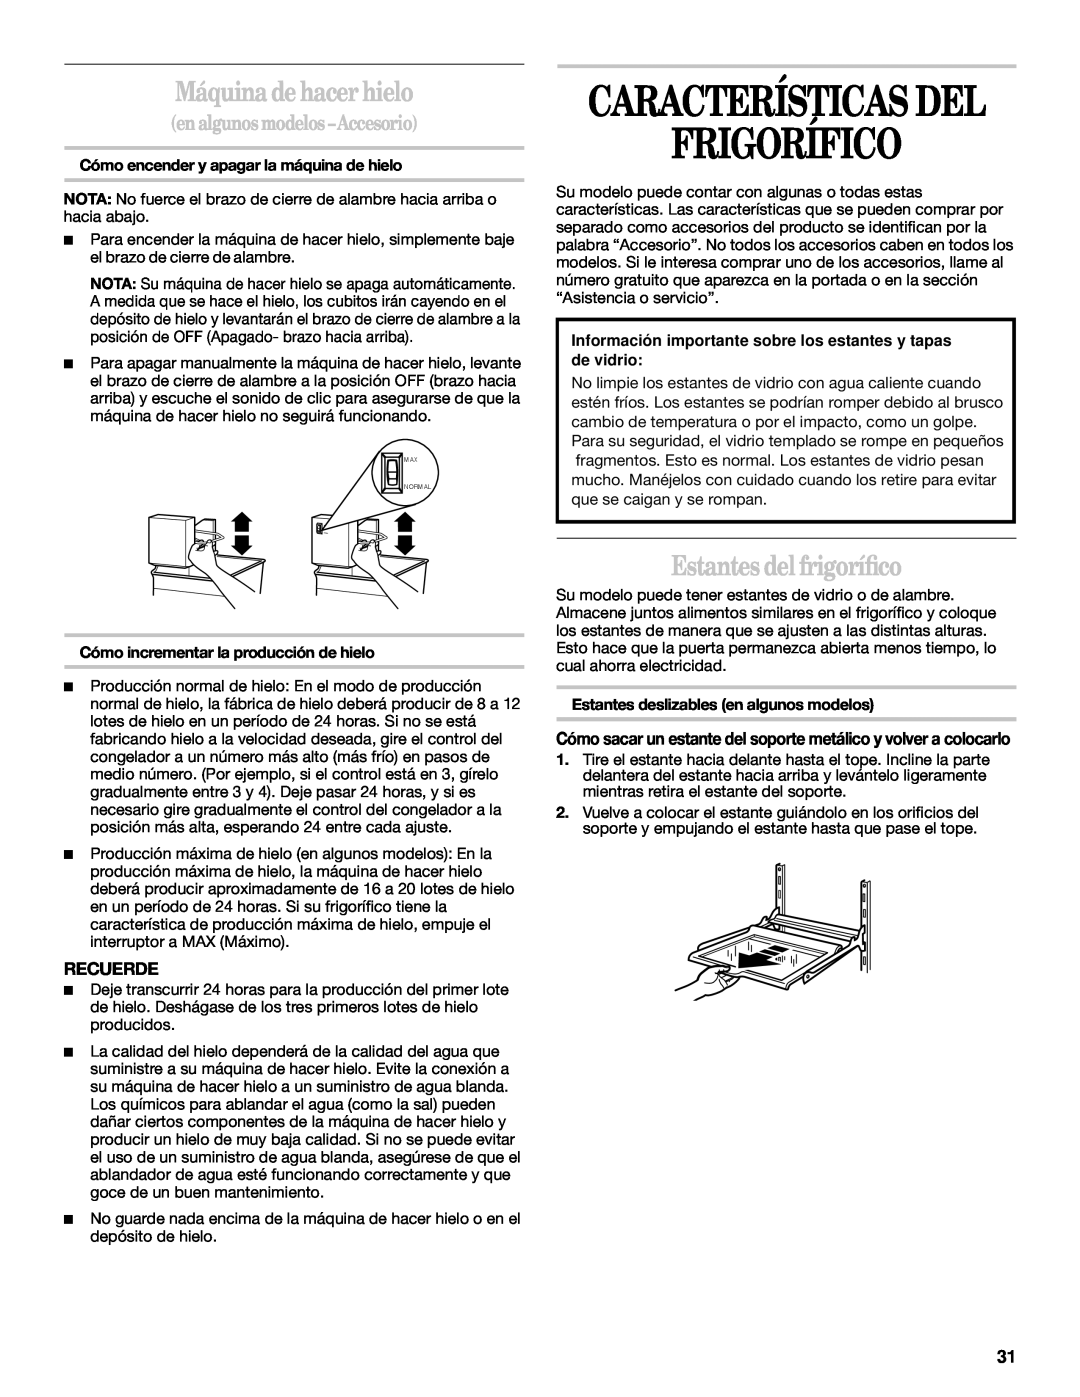 Whirlpool 2218585 manual Frigorífico, Características Del, Máquina de hacer hielo, Estantes del frigoríﬁco, Recuerde 